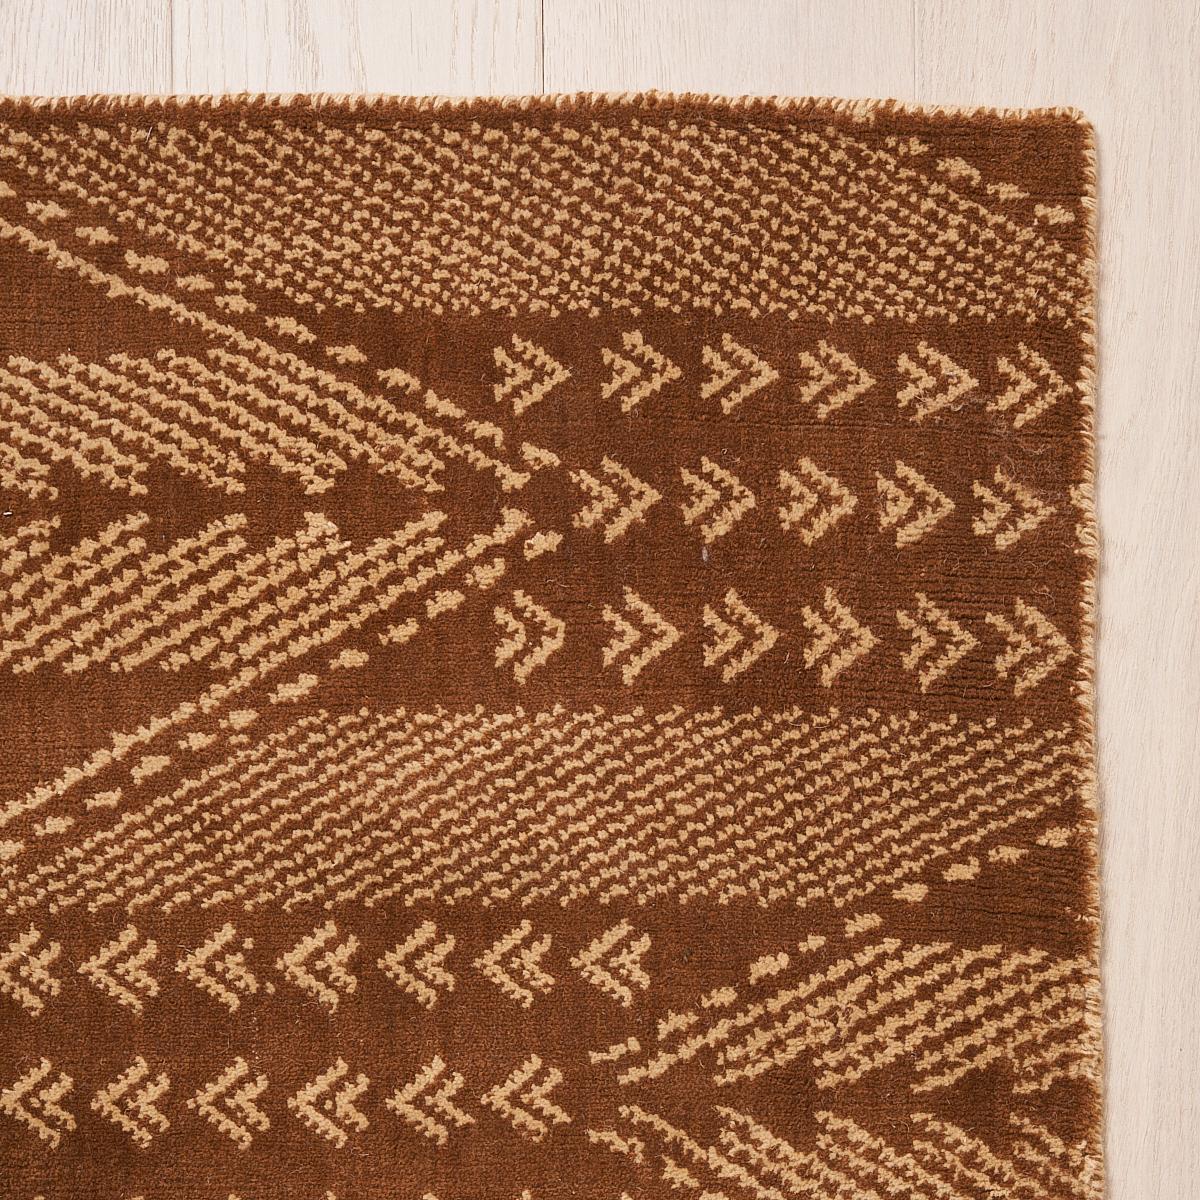 Ce tapis sera expédié en décembre. Fabriqué avec un tissage jacquard en laine et coton, Fitzgerald est un motif en zigzag à grande échelle avec des détails uniques en chevron et une belle texture. Adaptation de notre populaire tissu Fitzgerald, ce